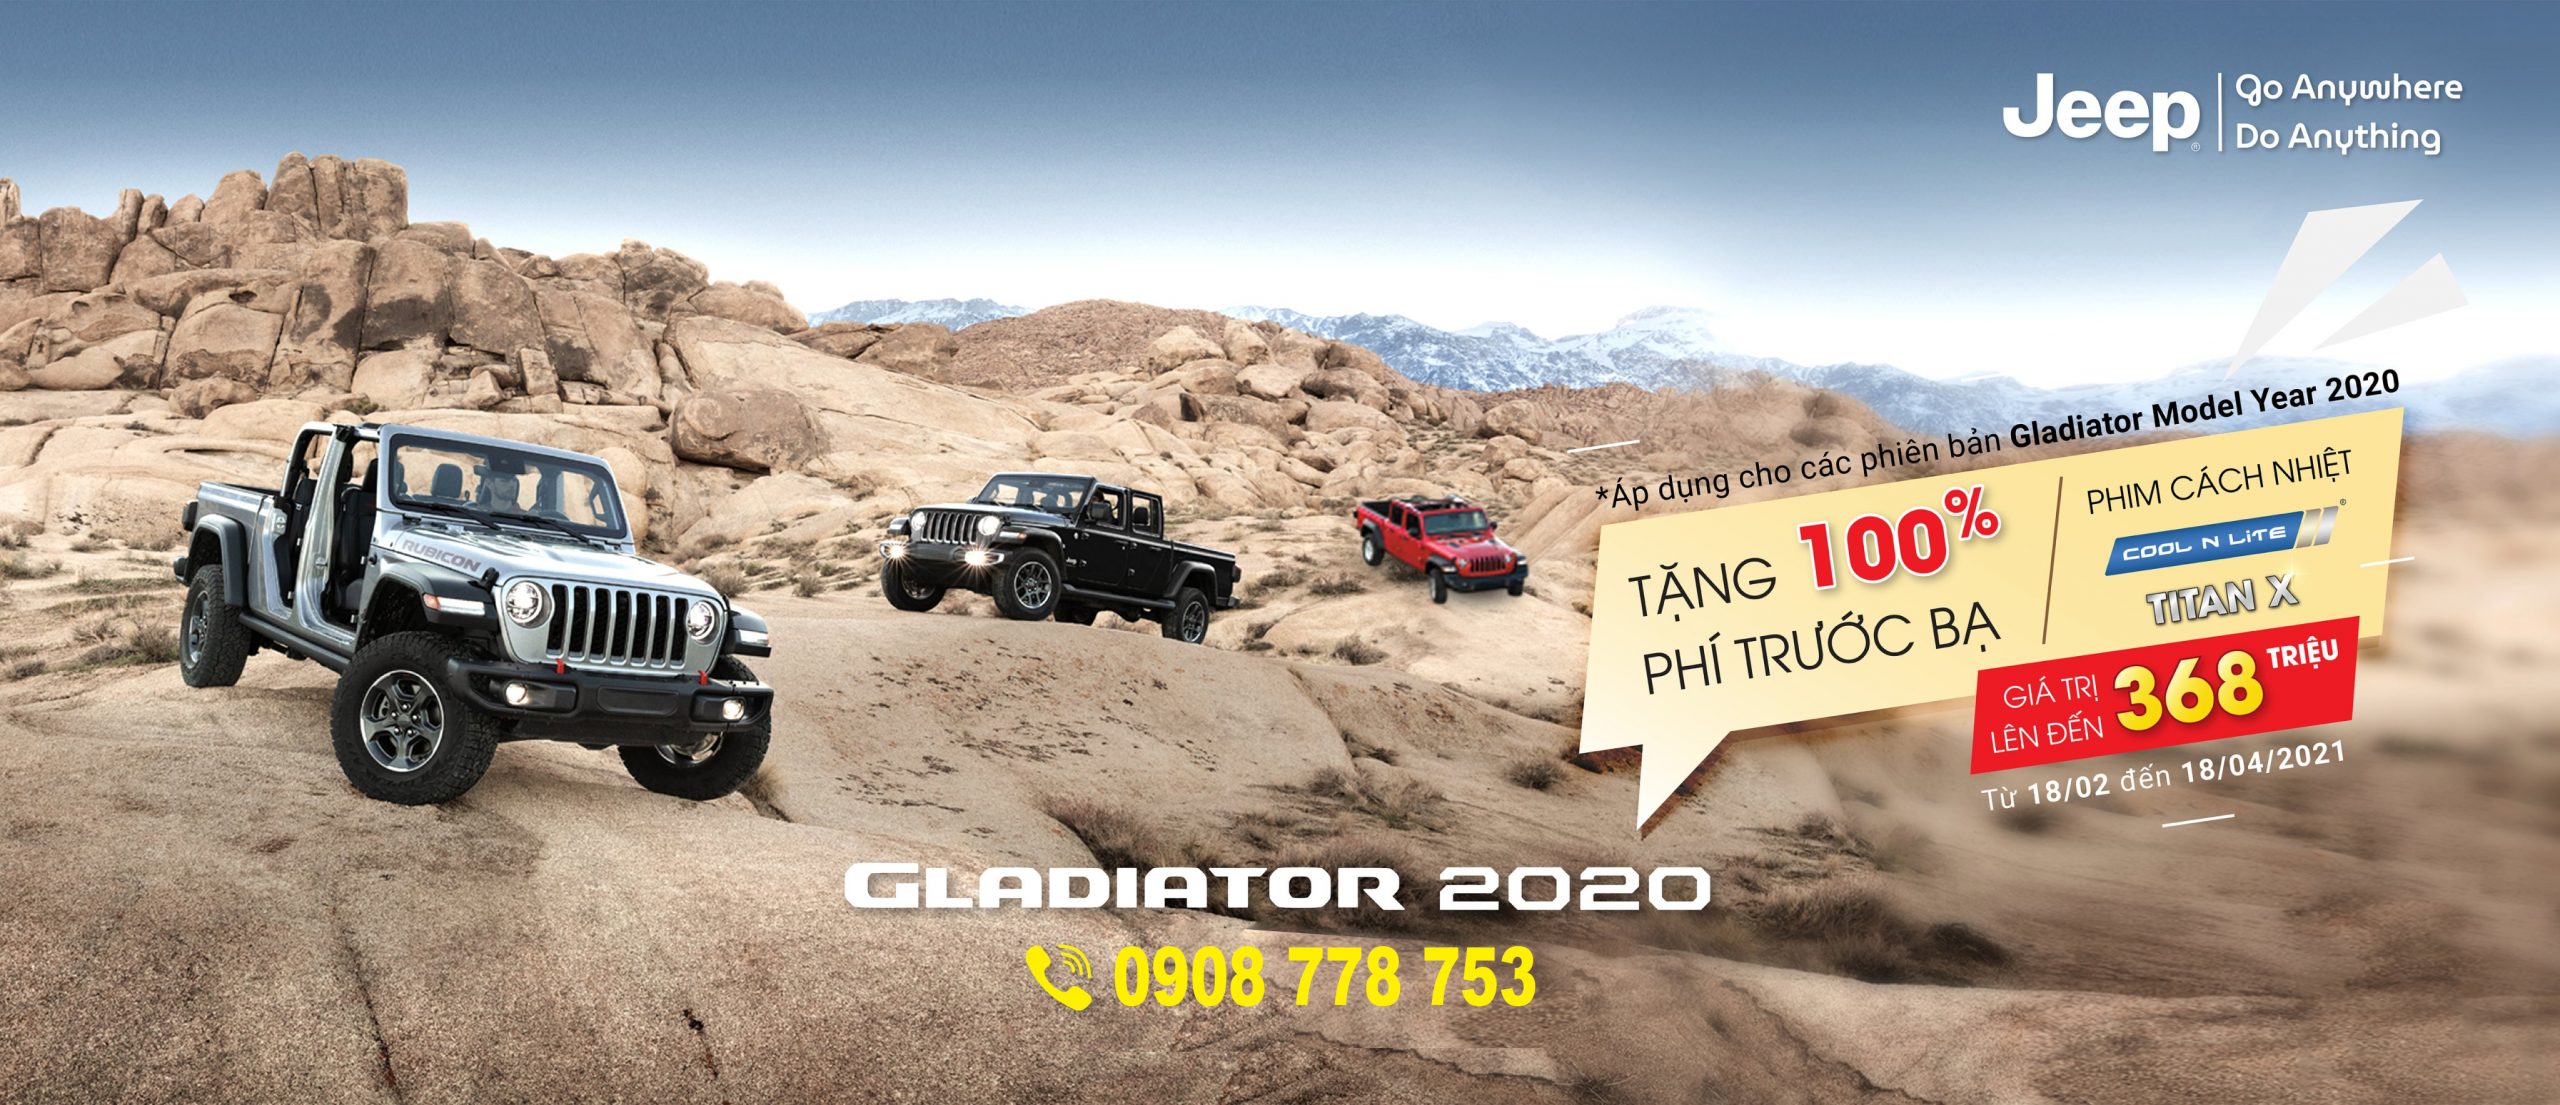 Tặng 100% phí trước bạ lên đến 368 triệu đồng khi mua Jeep Gladiator 2020